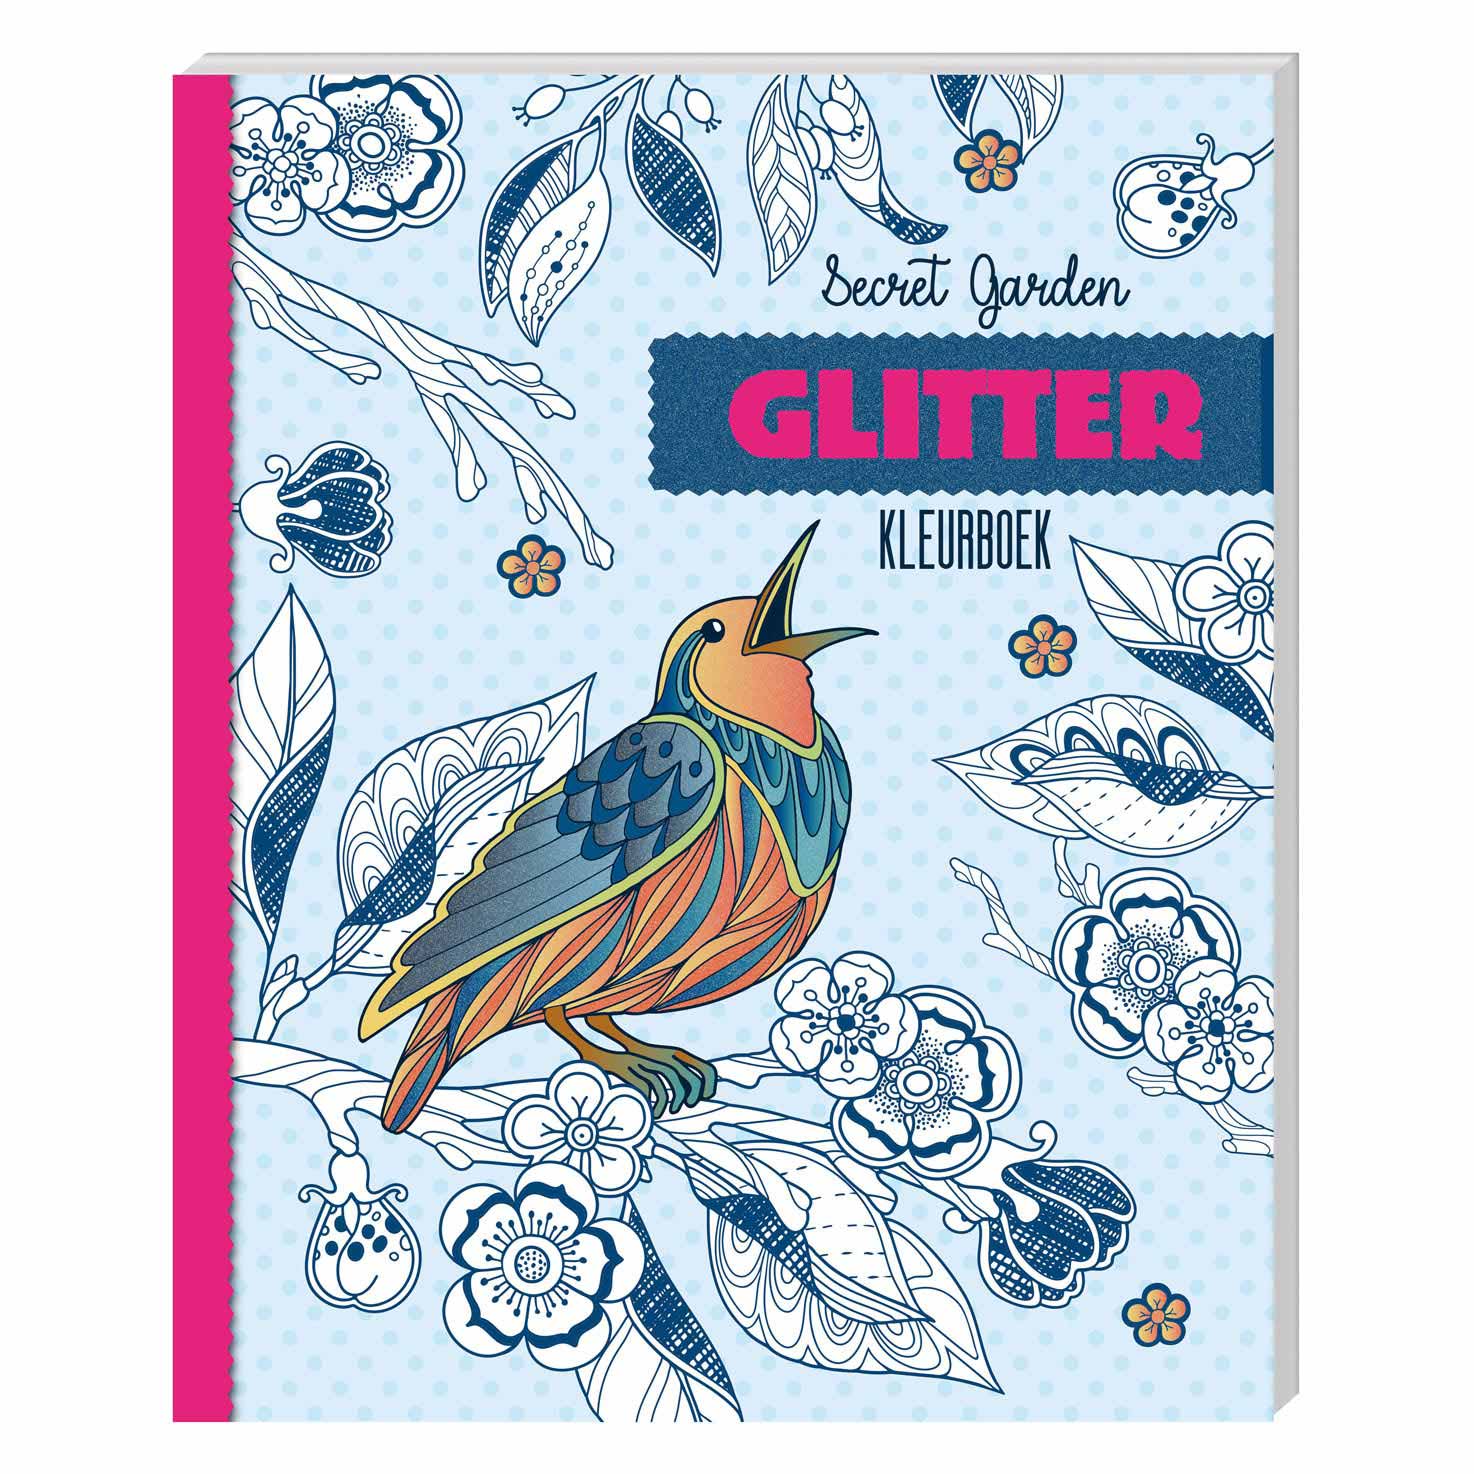 Kneden Wissen maart Glitter kleurboek - Secret Garden Kopen? ⋆ Invulboekjes.nl